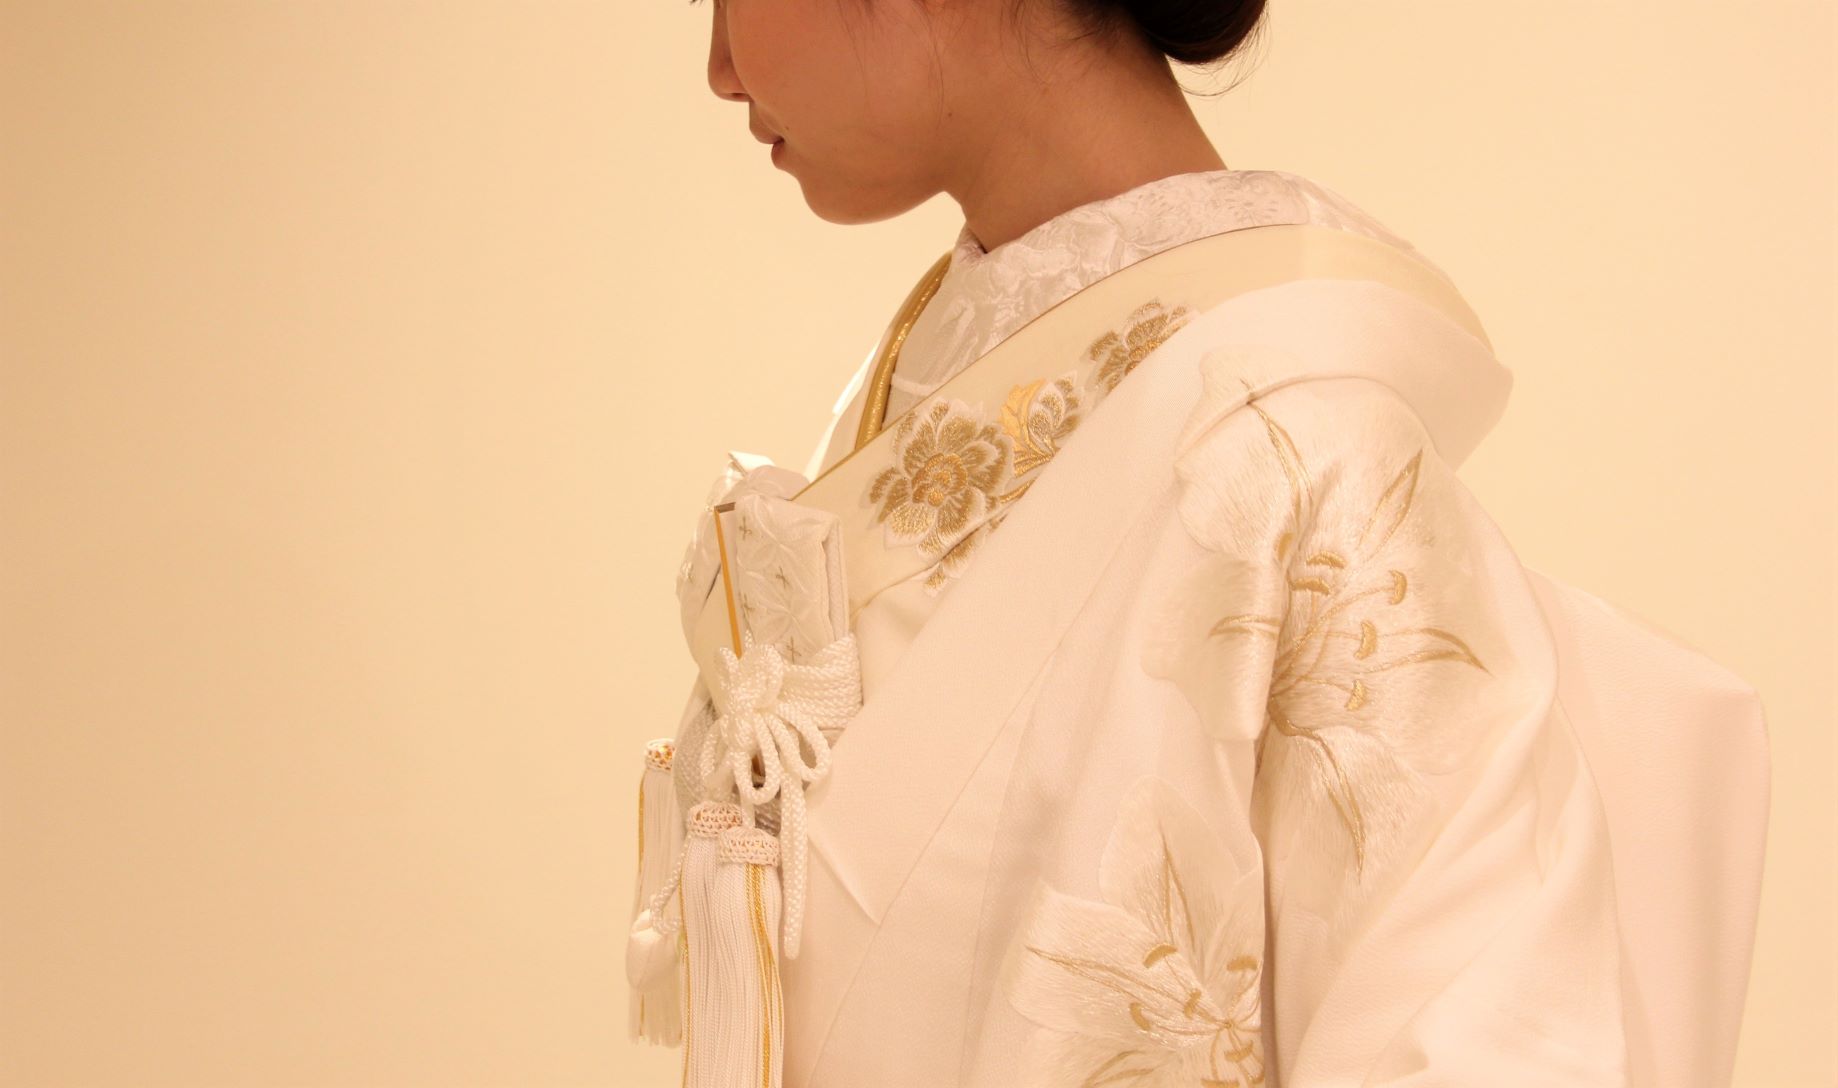 絹100%で仕立てられた伝統的な花嫁衣装である白無垢は柔らかな風合いや着心地の良さが特徴です